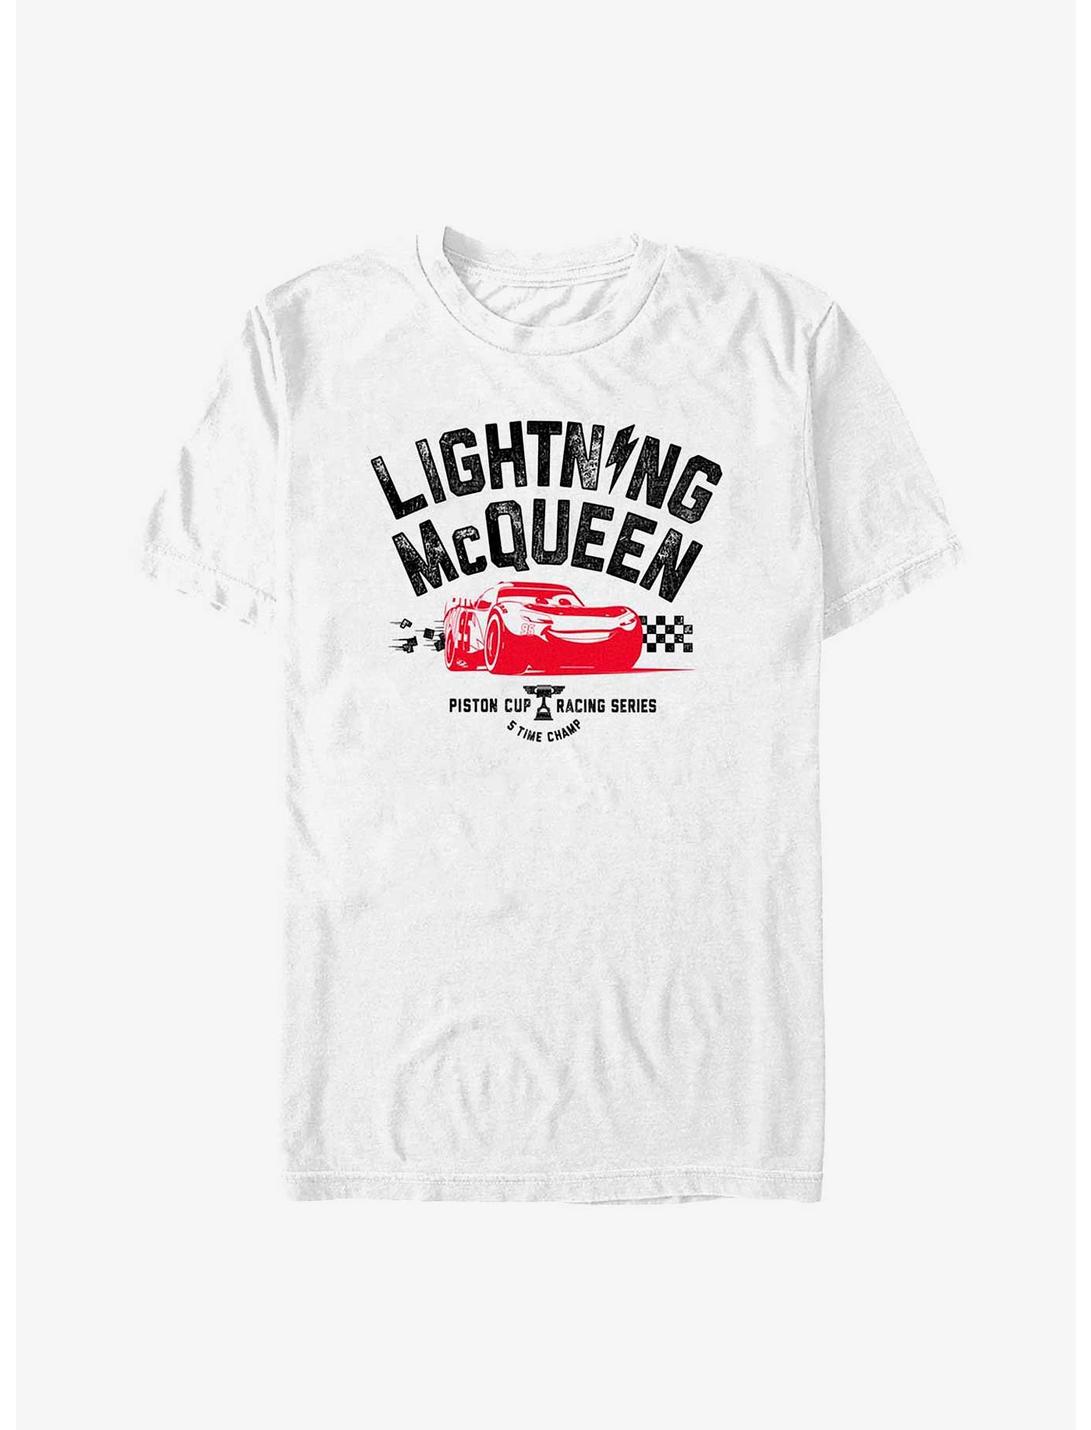 Disney Pixar Cars Piston Champ Lightning McQueen T-Shirt, WHITE, hi-res